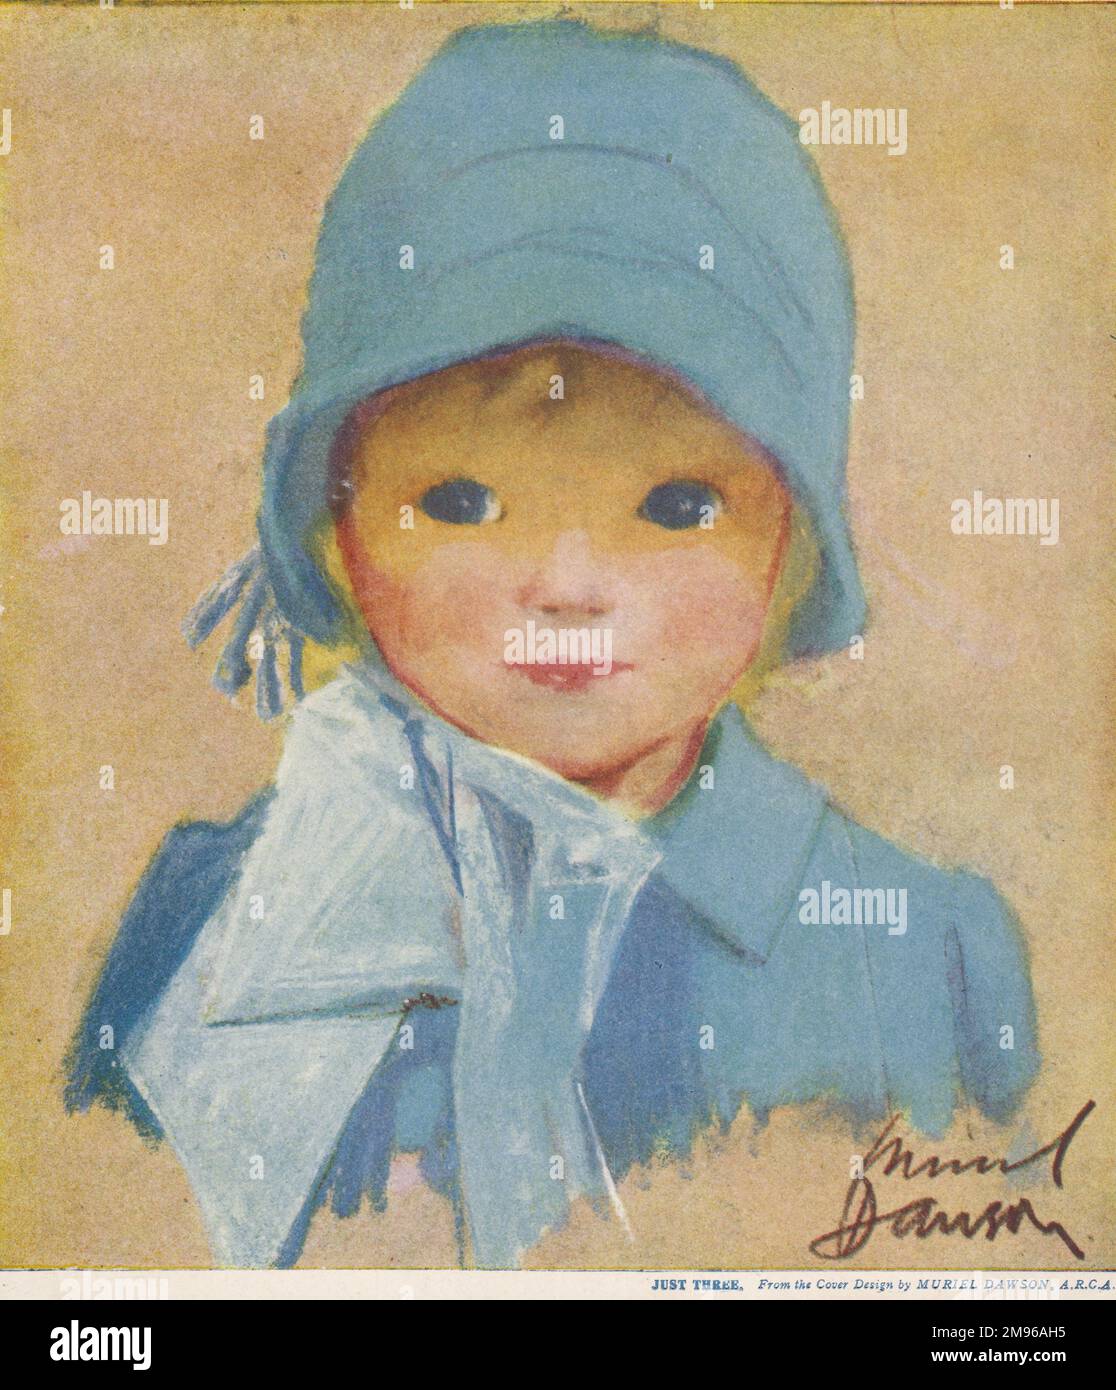 Ein süßes kleines Mädchen, das einen blauen Glockenhut mit Schleife und einen Mantel trägt, die beide zu ihren Augen passen. Stockfoto